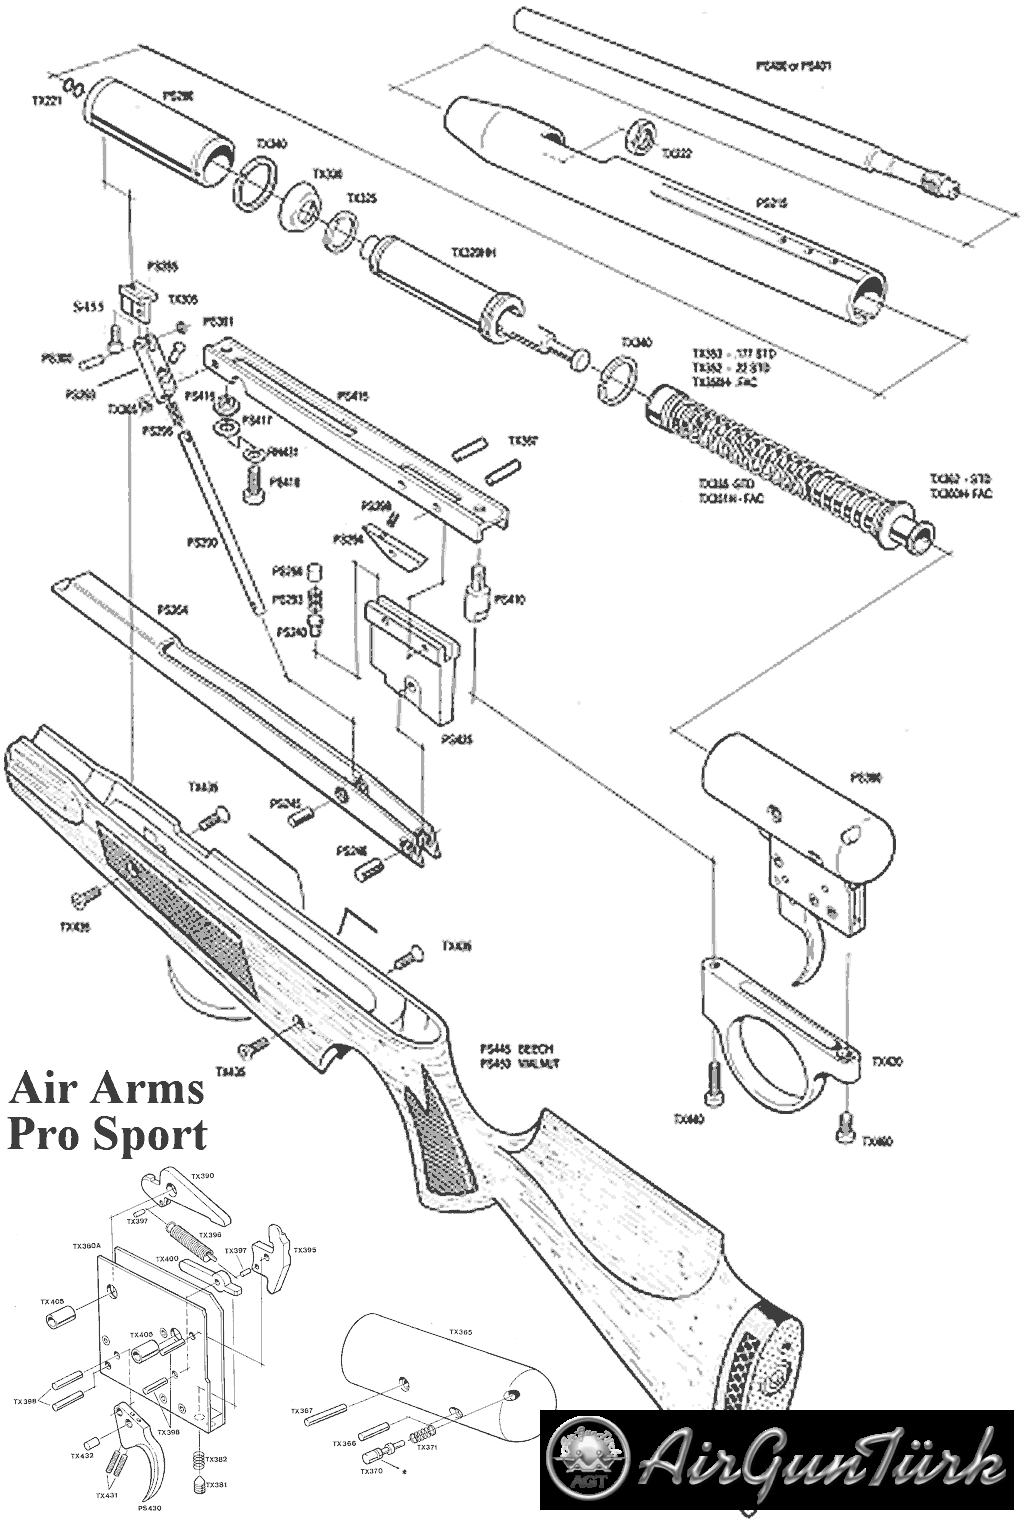 AirArms Prosport Şema ve Ayrıntıları